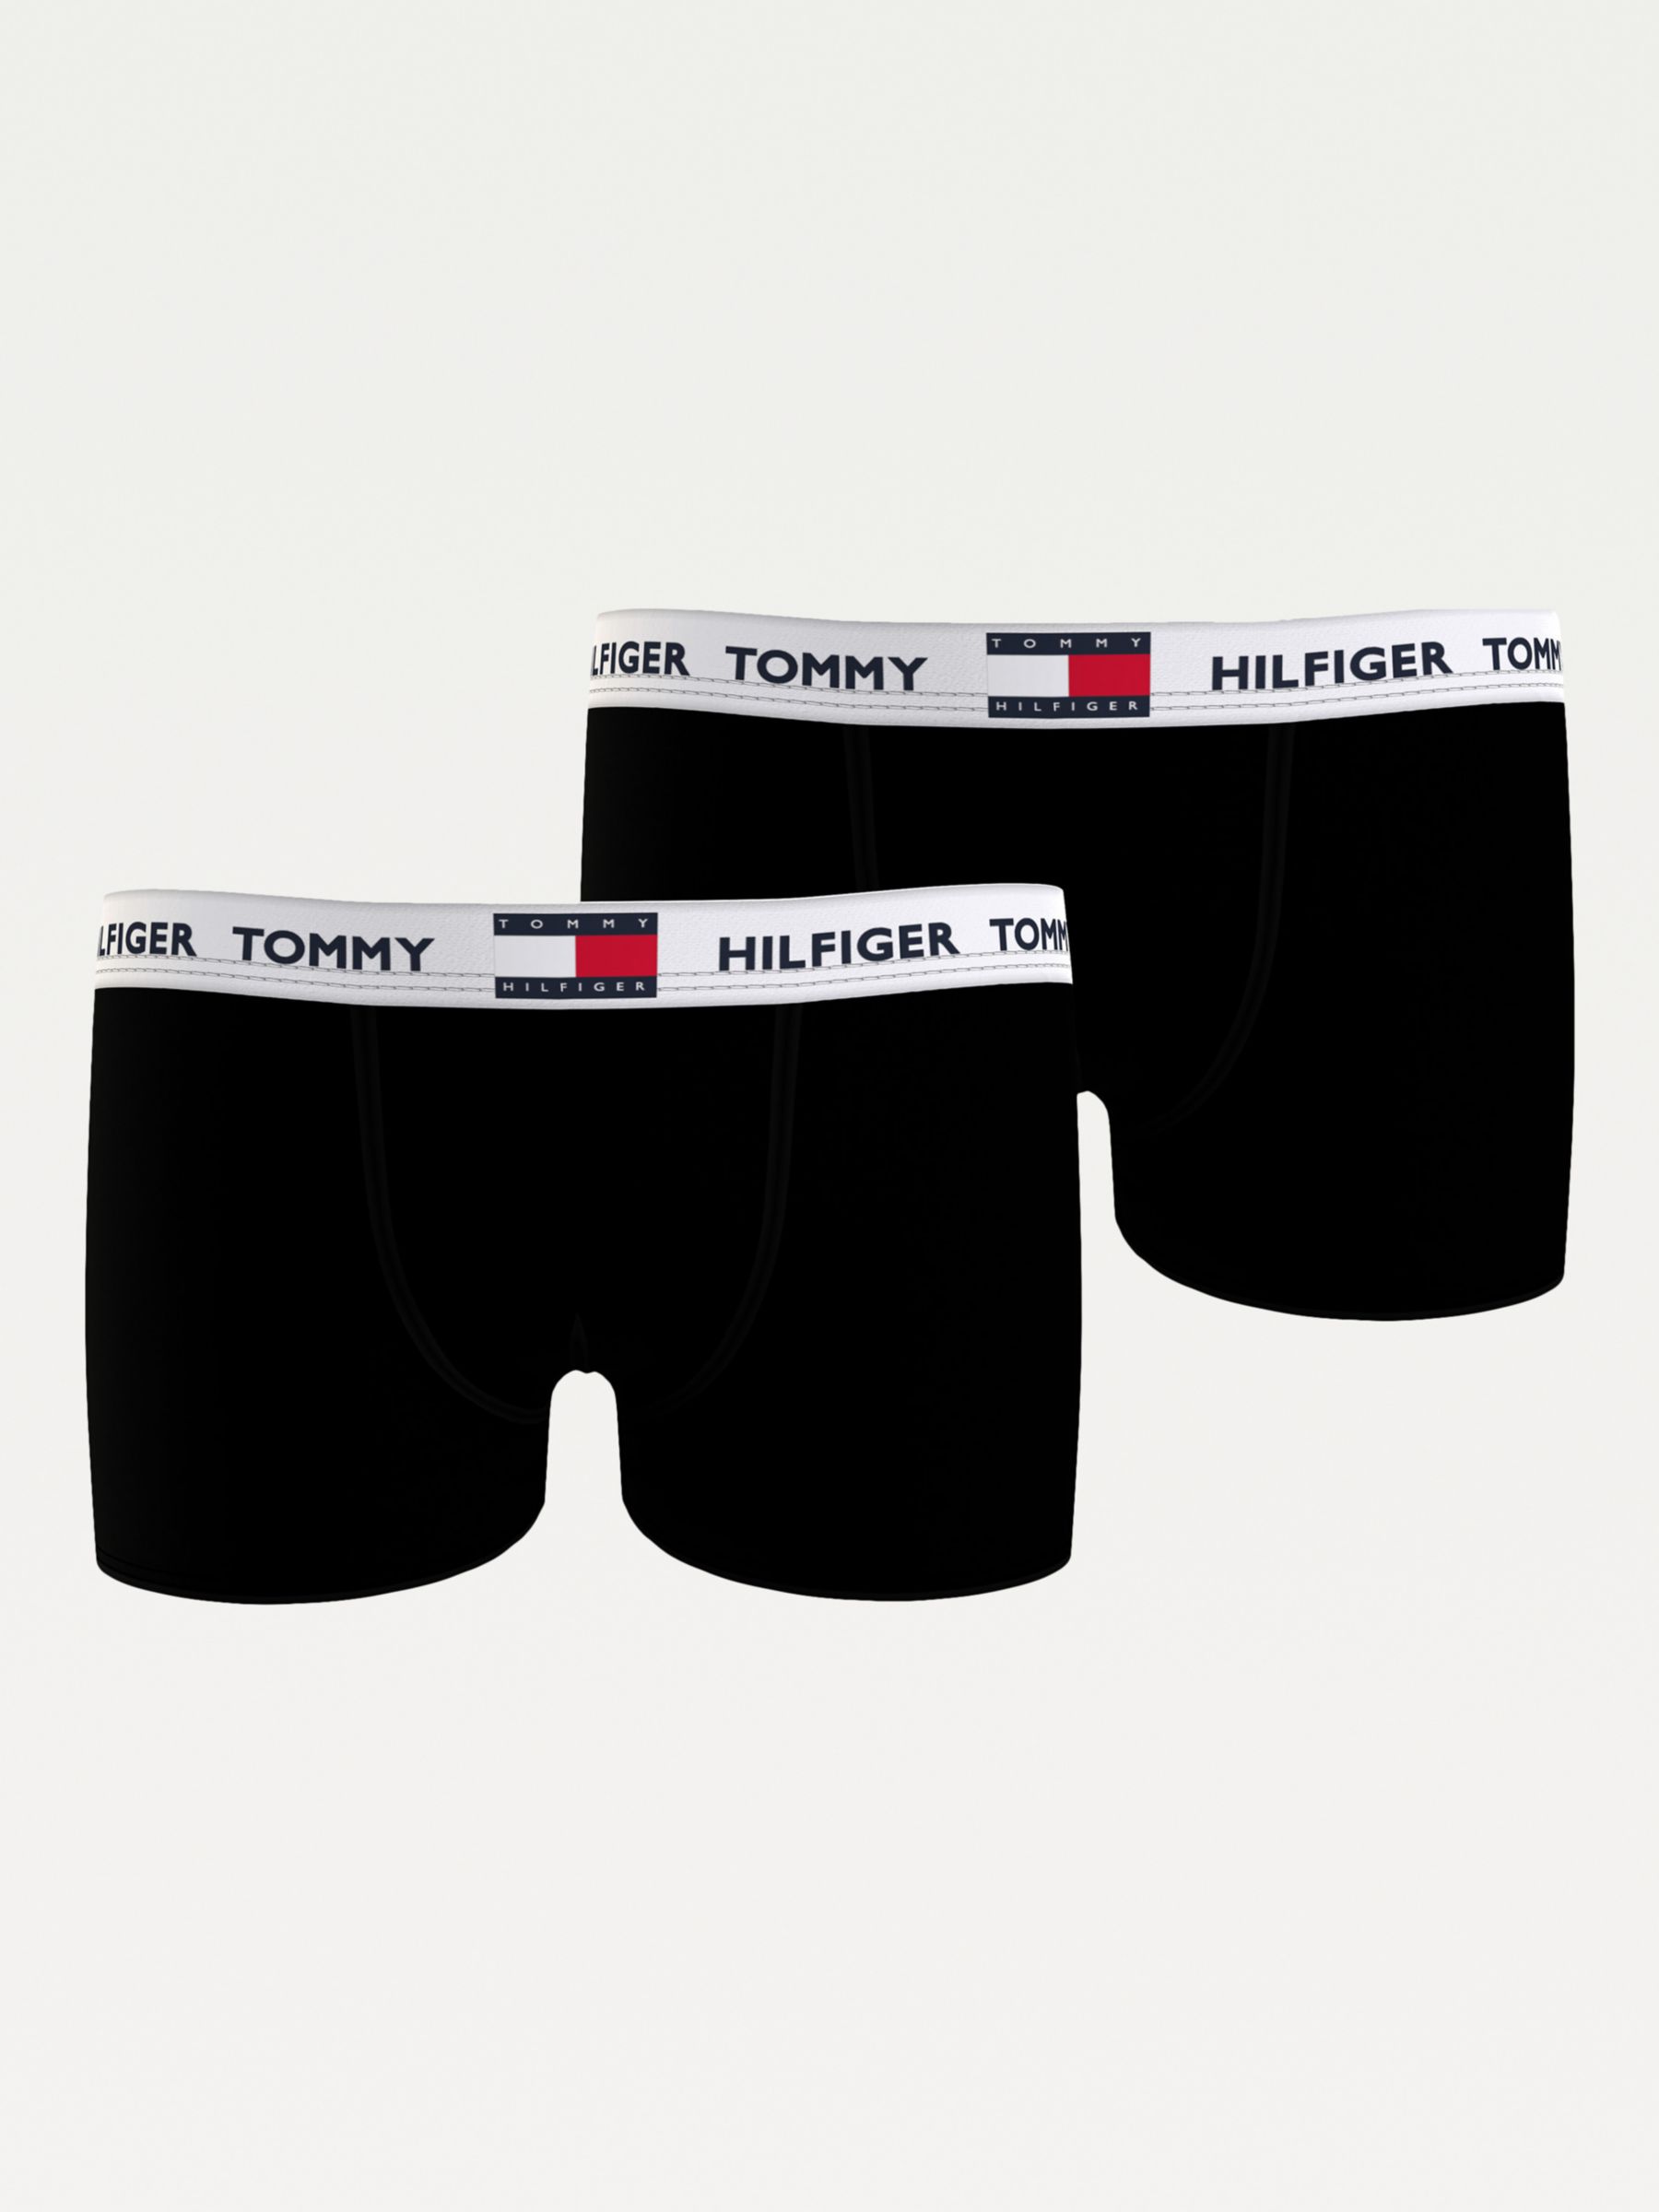 Tommy Hilfiger Kids' Trunks, Pack of 2, Black at John Lewis & Partners